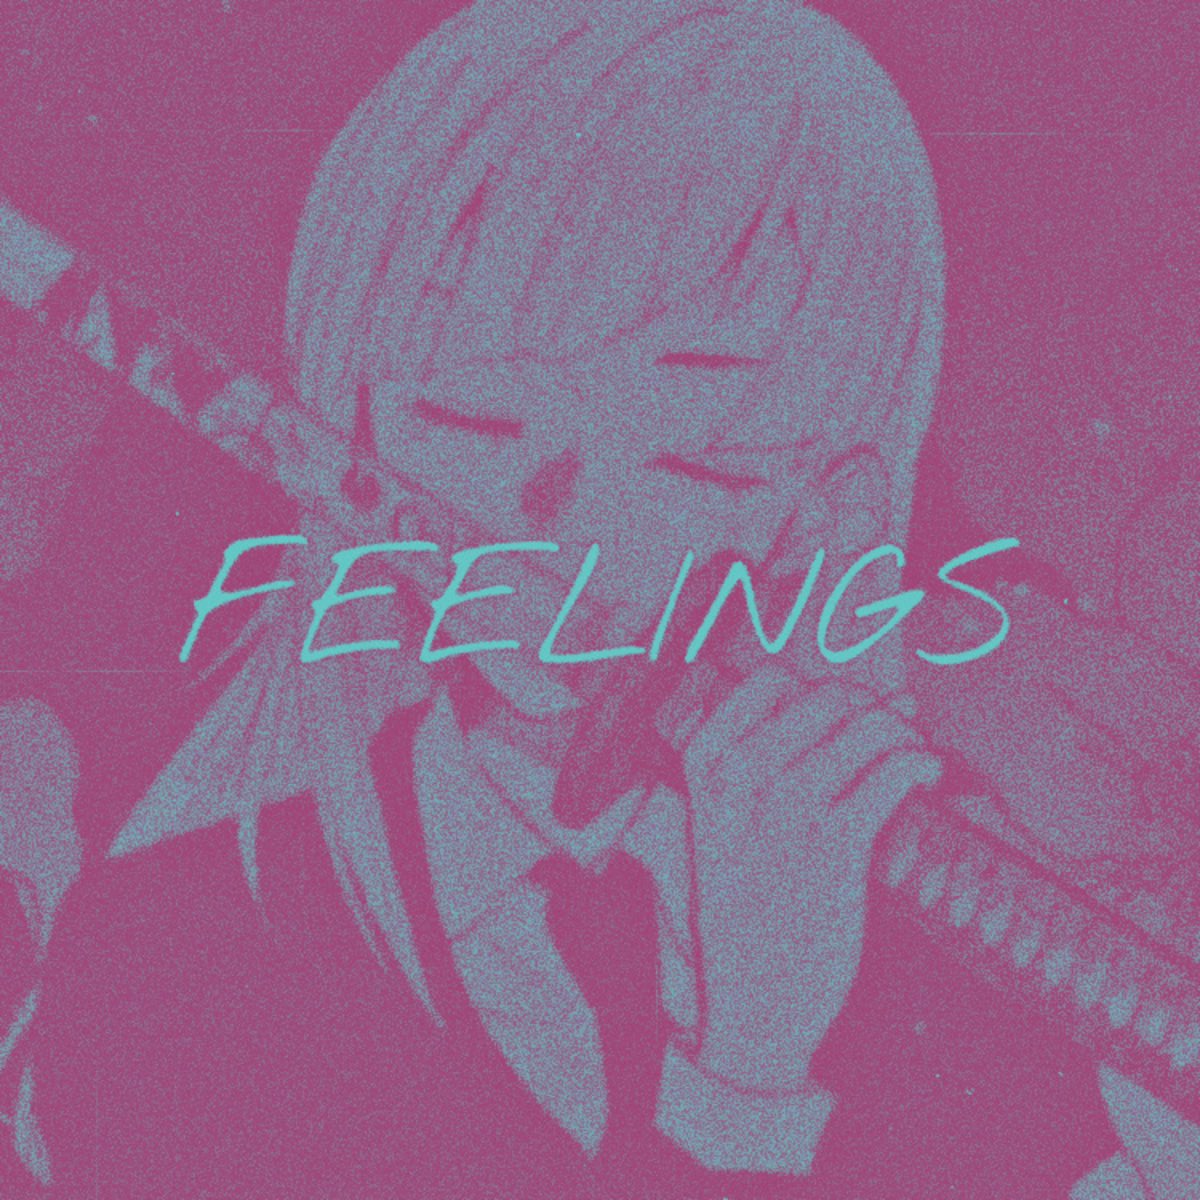 Sea of feelings (Slowed) LOWX.